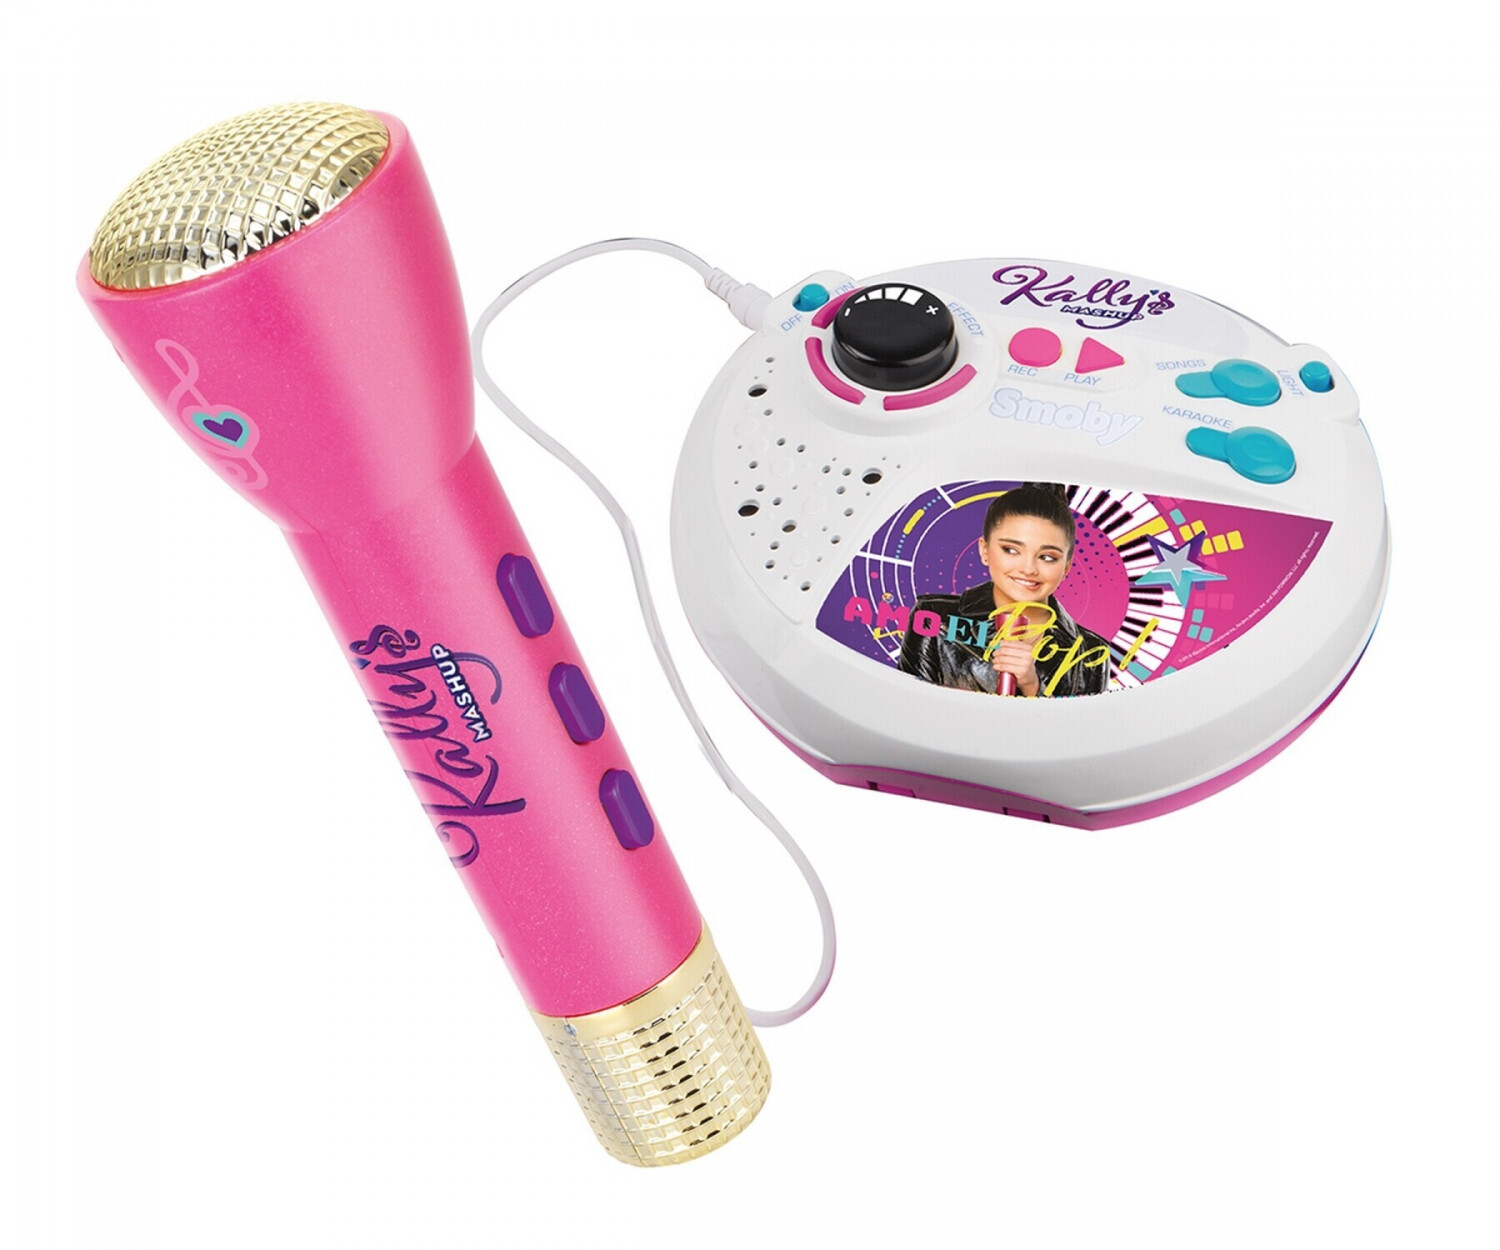 Smoby Kally's Mashup Microphone Sur Pied au meilleur prix sur